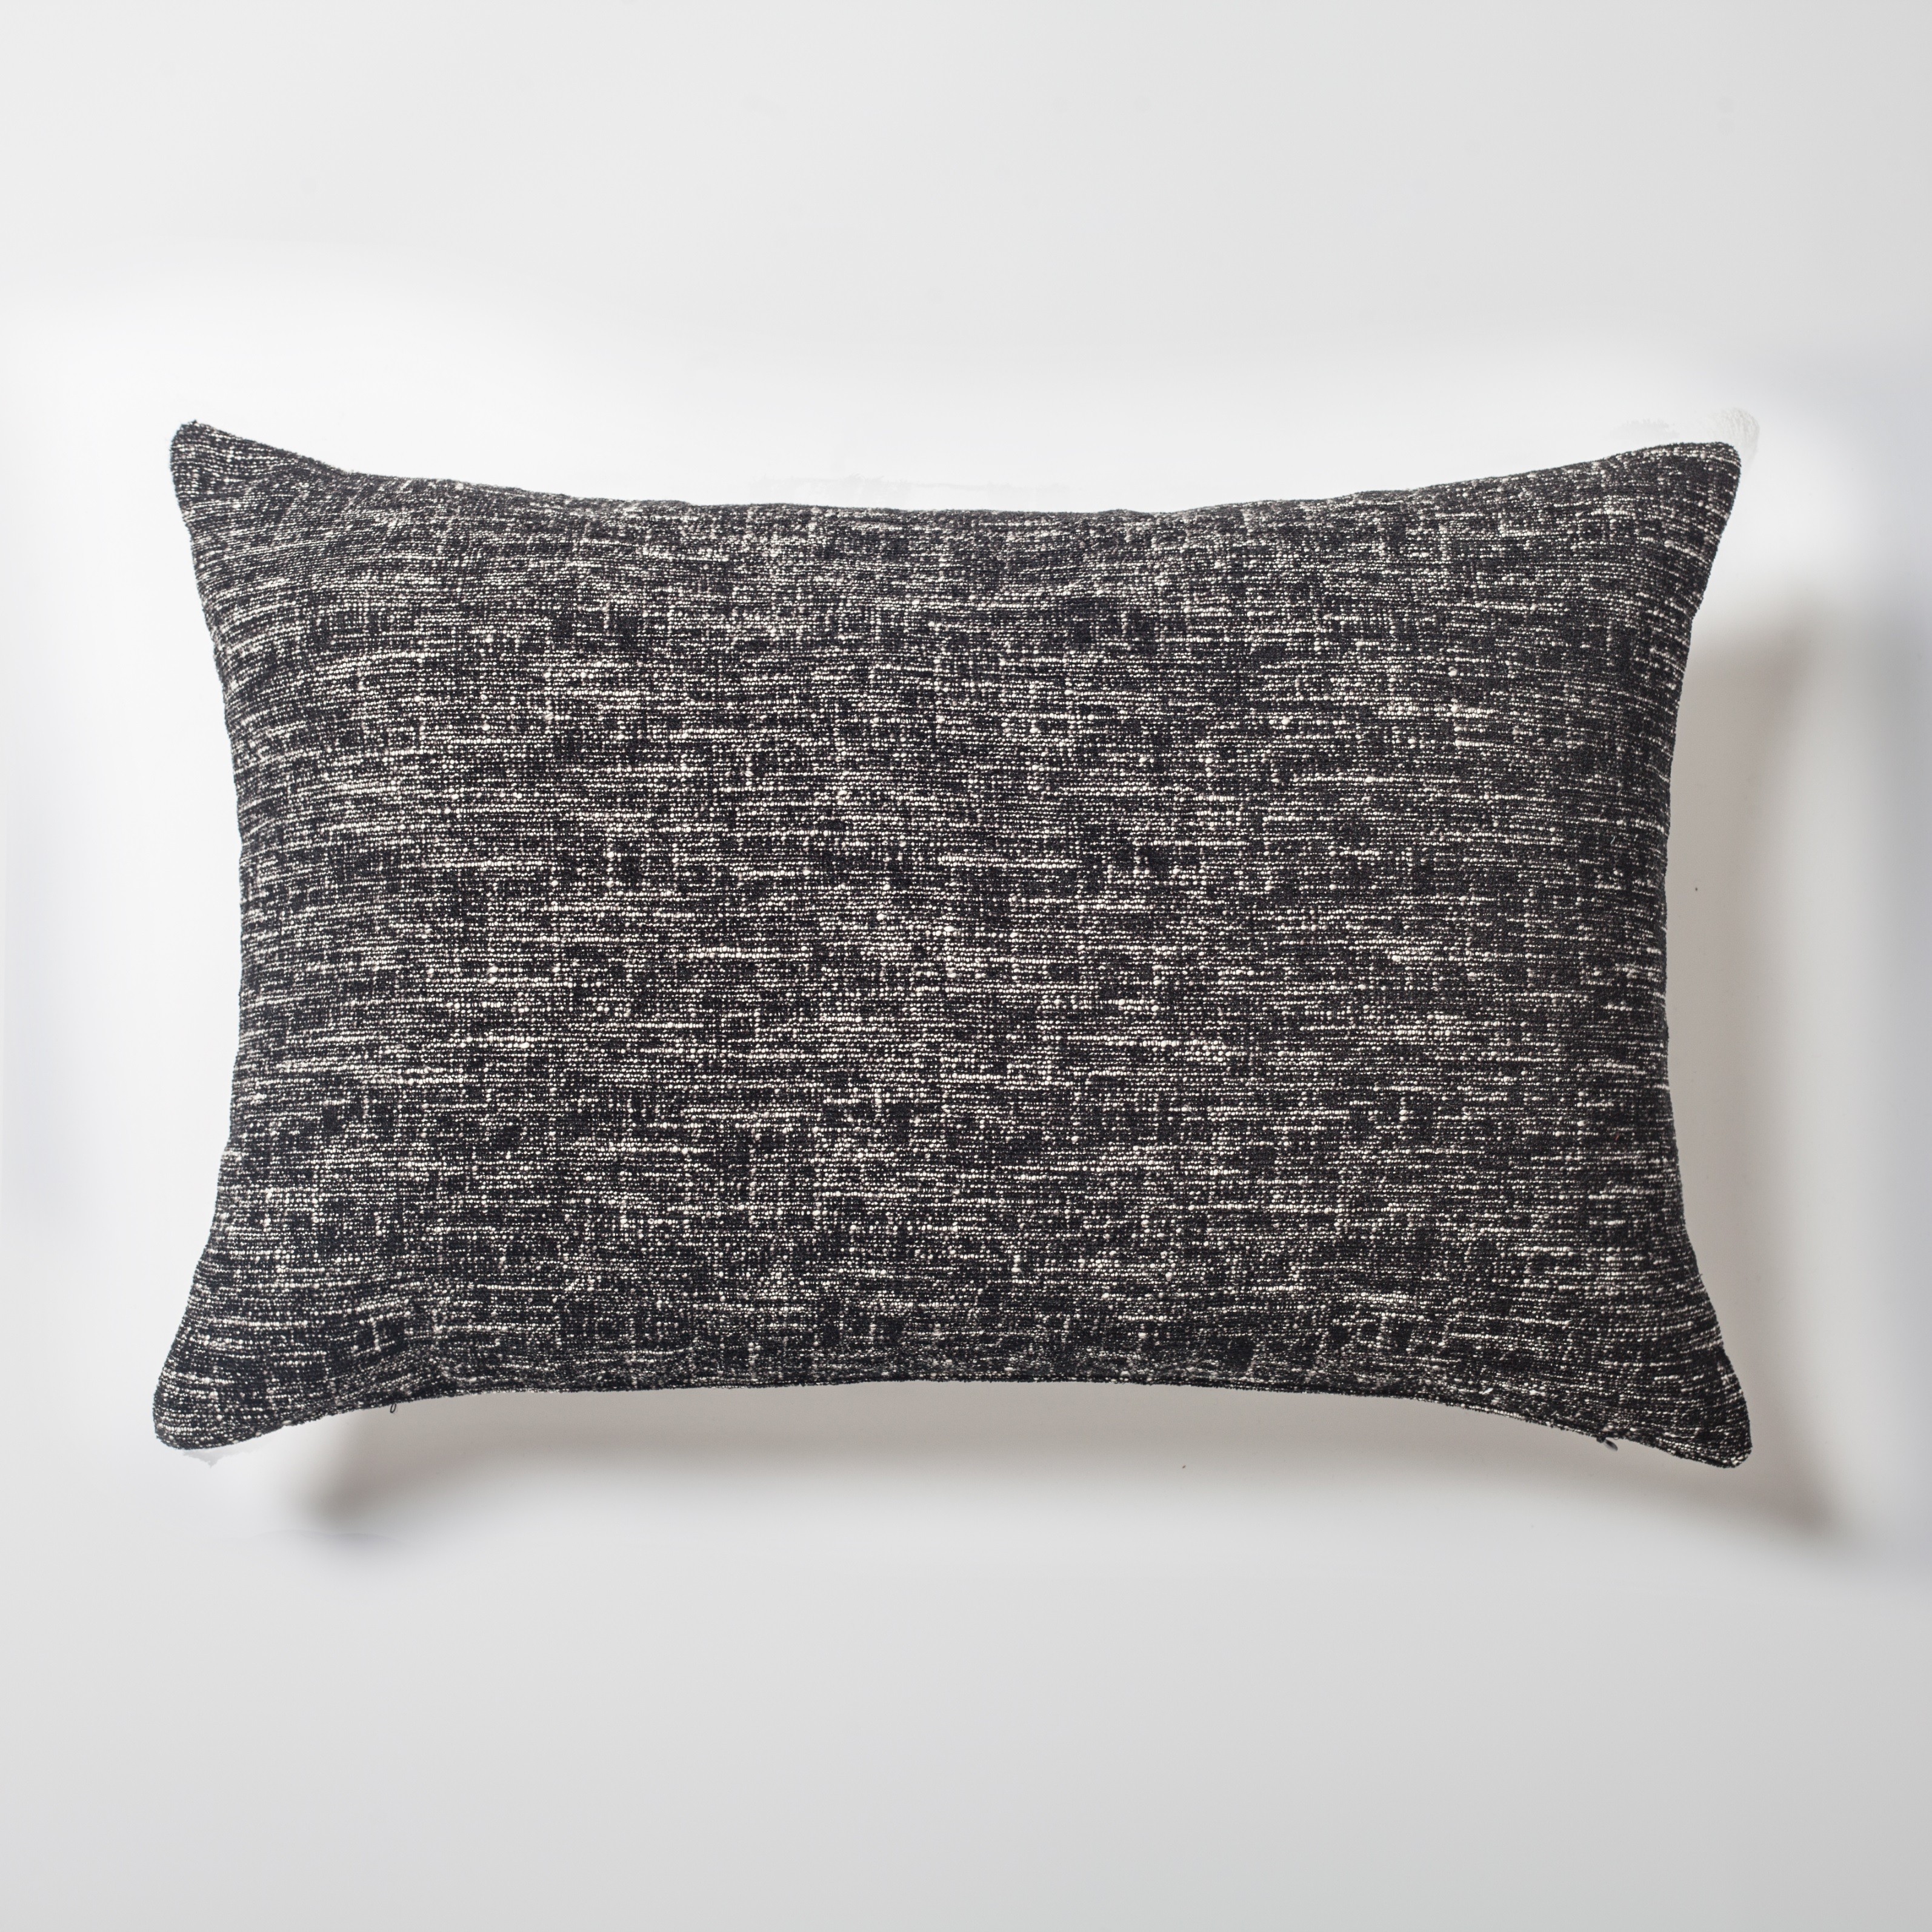 "Flap" - Textured Rectangular Linen Pillow 16x24 Inch - Black (Cover Only)